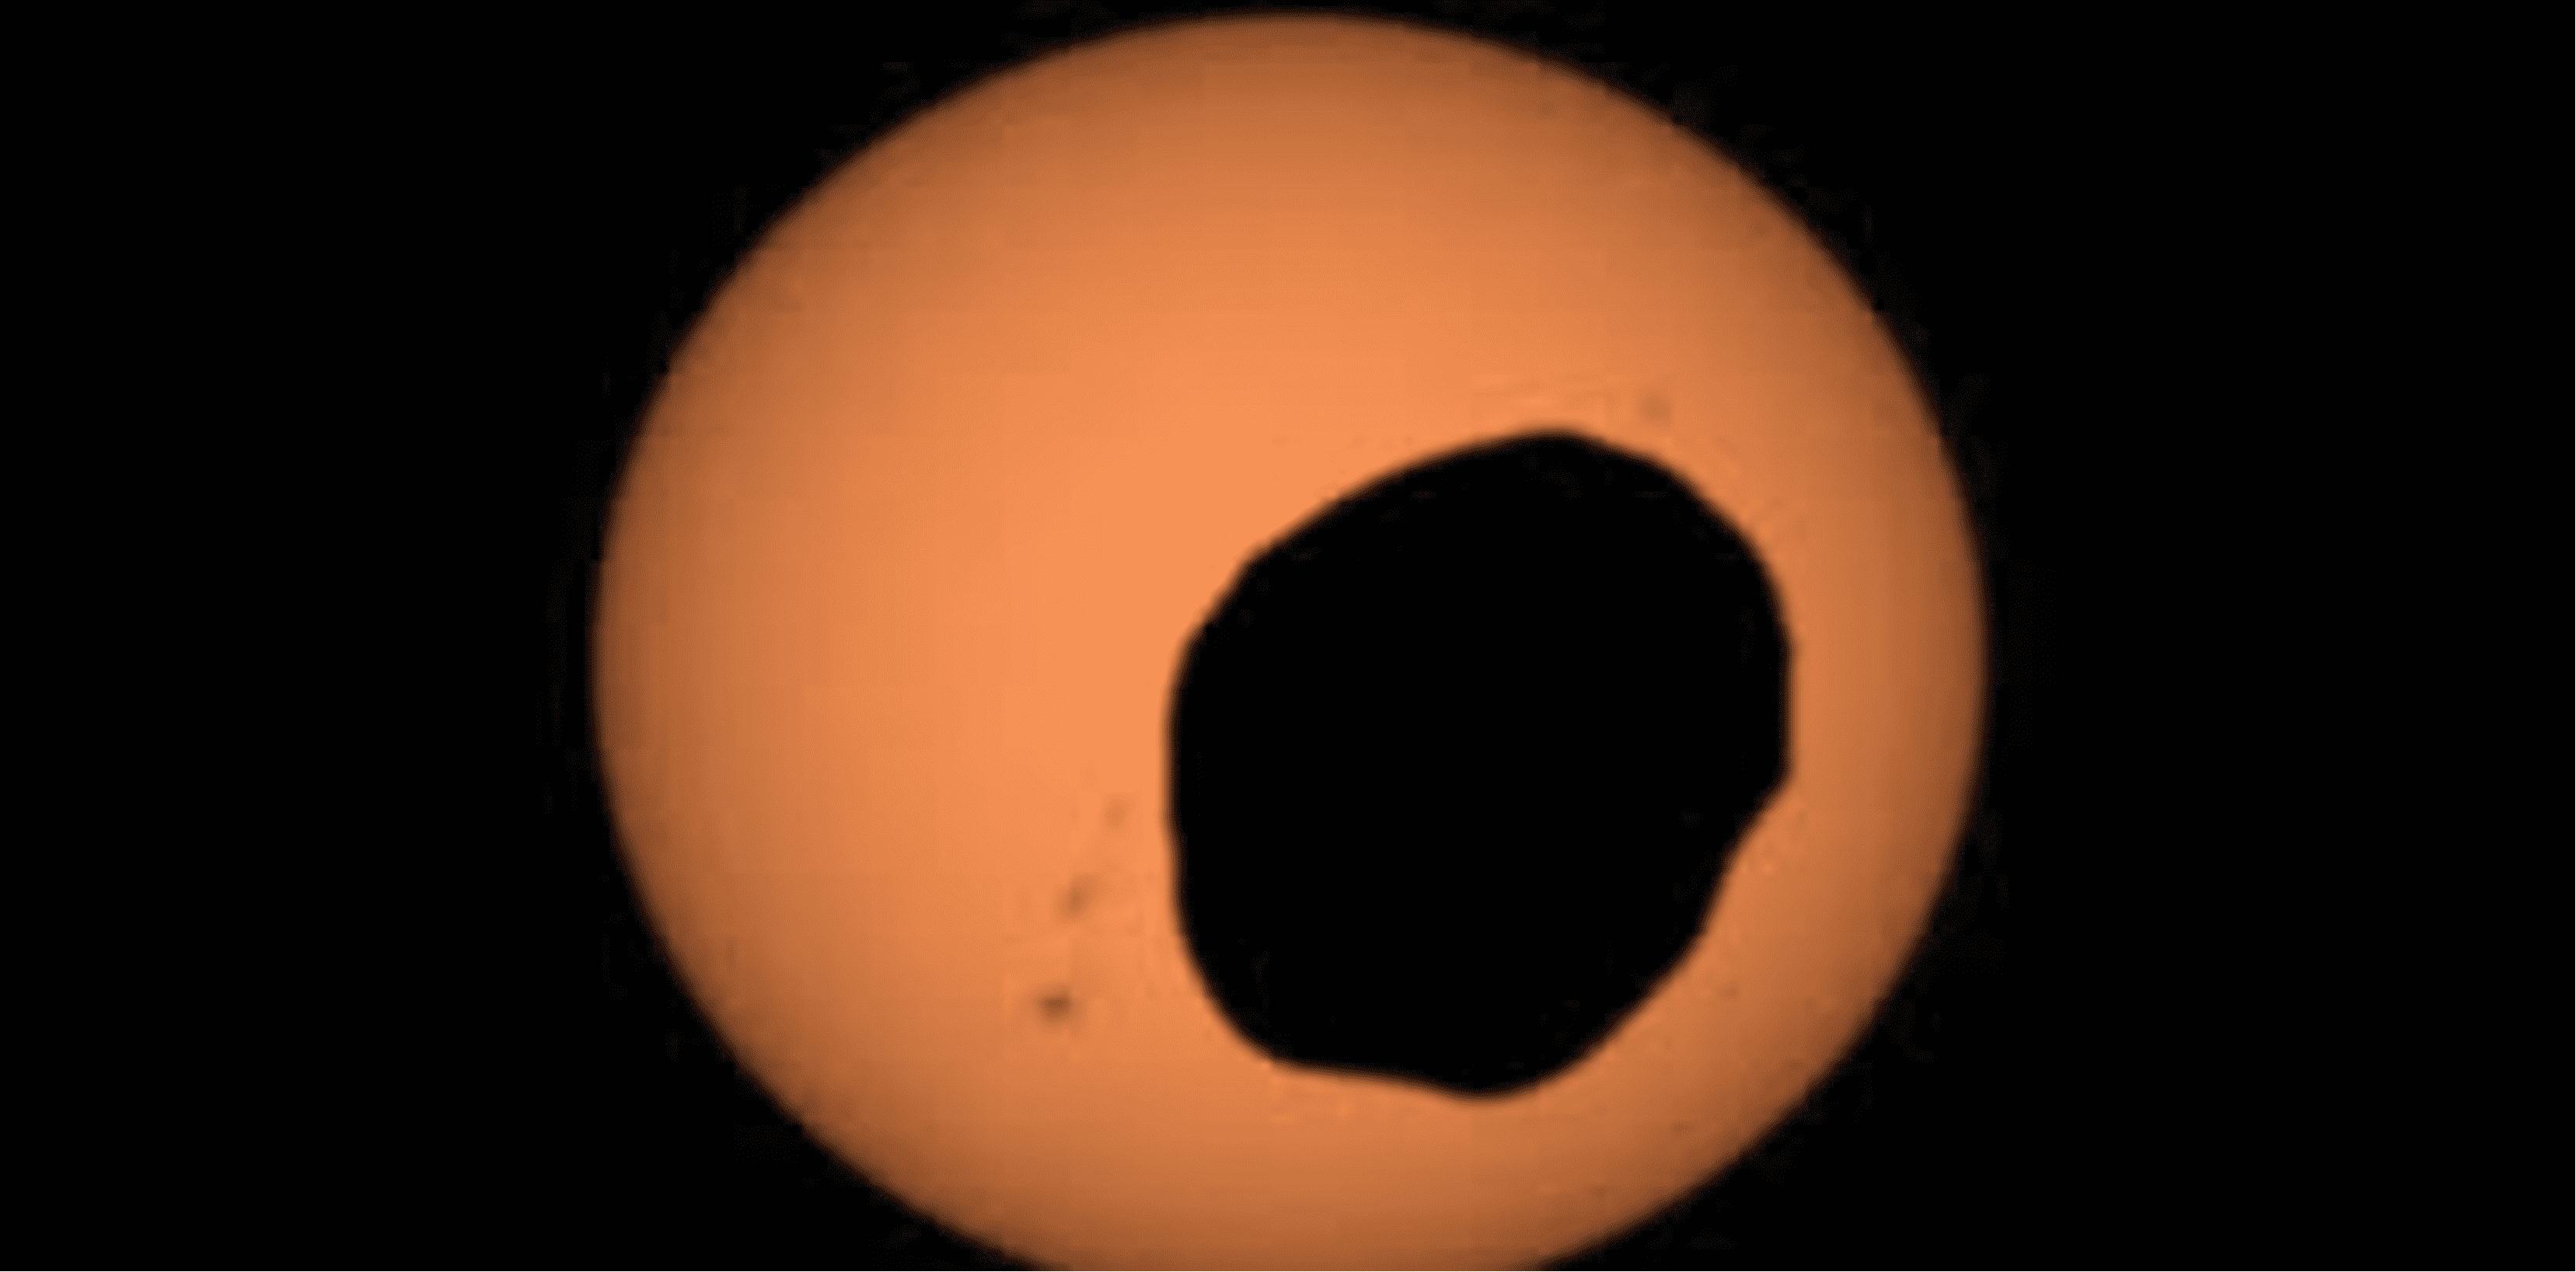 Perseverance Mars de la NASA usó su cámara Mastcam Z para grabar un video de Fobos, una de las dos lunas de Marte, eclipsando al Sol. Es la observación más ampliada y con mayor velocidad de fotogramas de un eclipse solar de Fobos jamás hecha desde la superficie marciana. Créditos: NASA/JPL- Caltech/ASU/MSSS/SSI